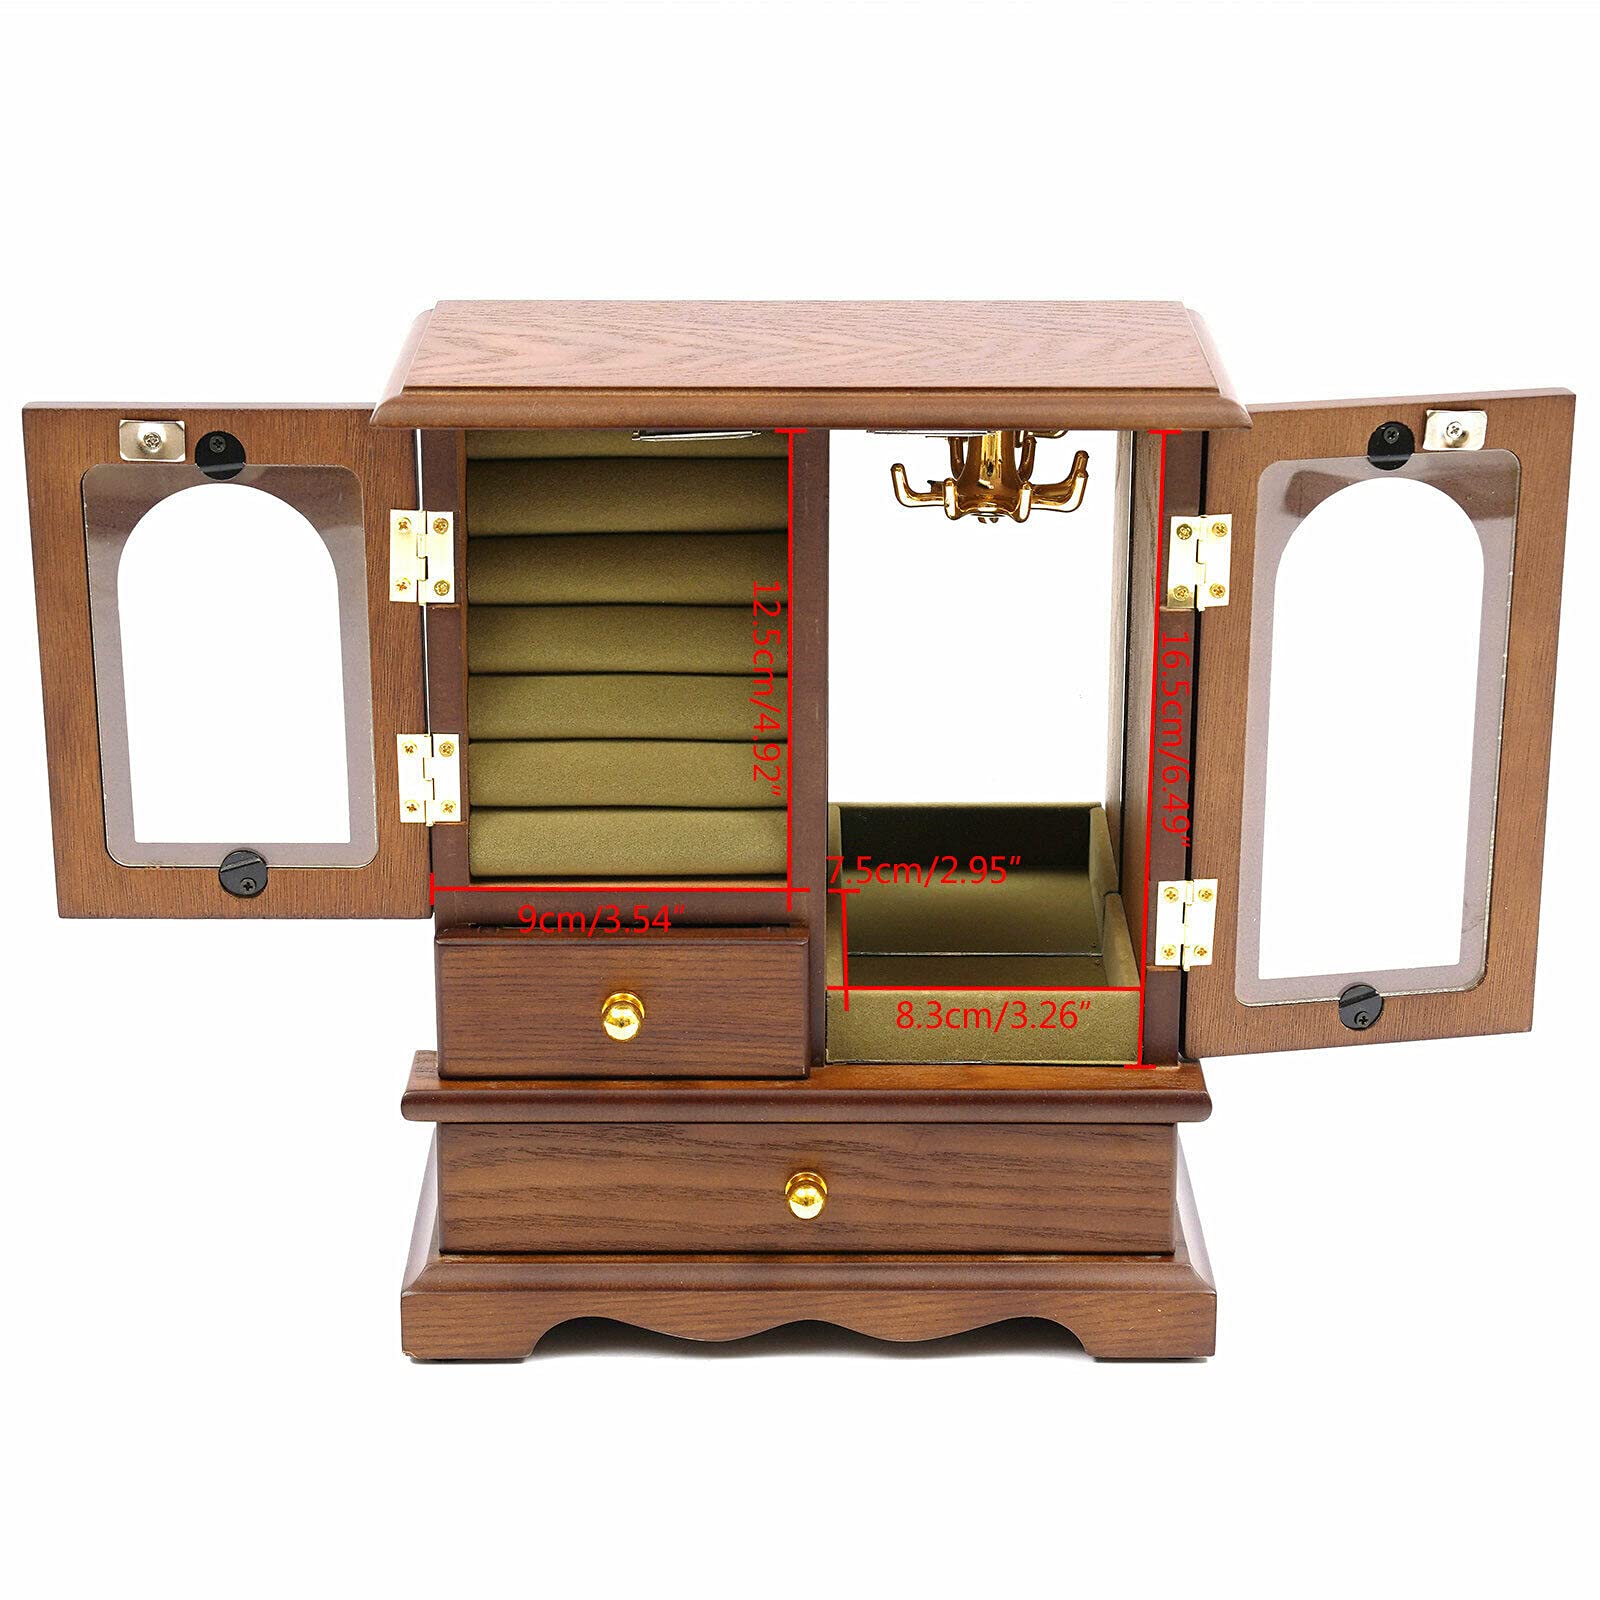 Portagioie in legno con 2 cassetti, porta in vetro, per gioielli, orecchini, collane, 21,5 x 11 x 27 cm